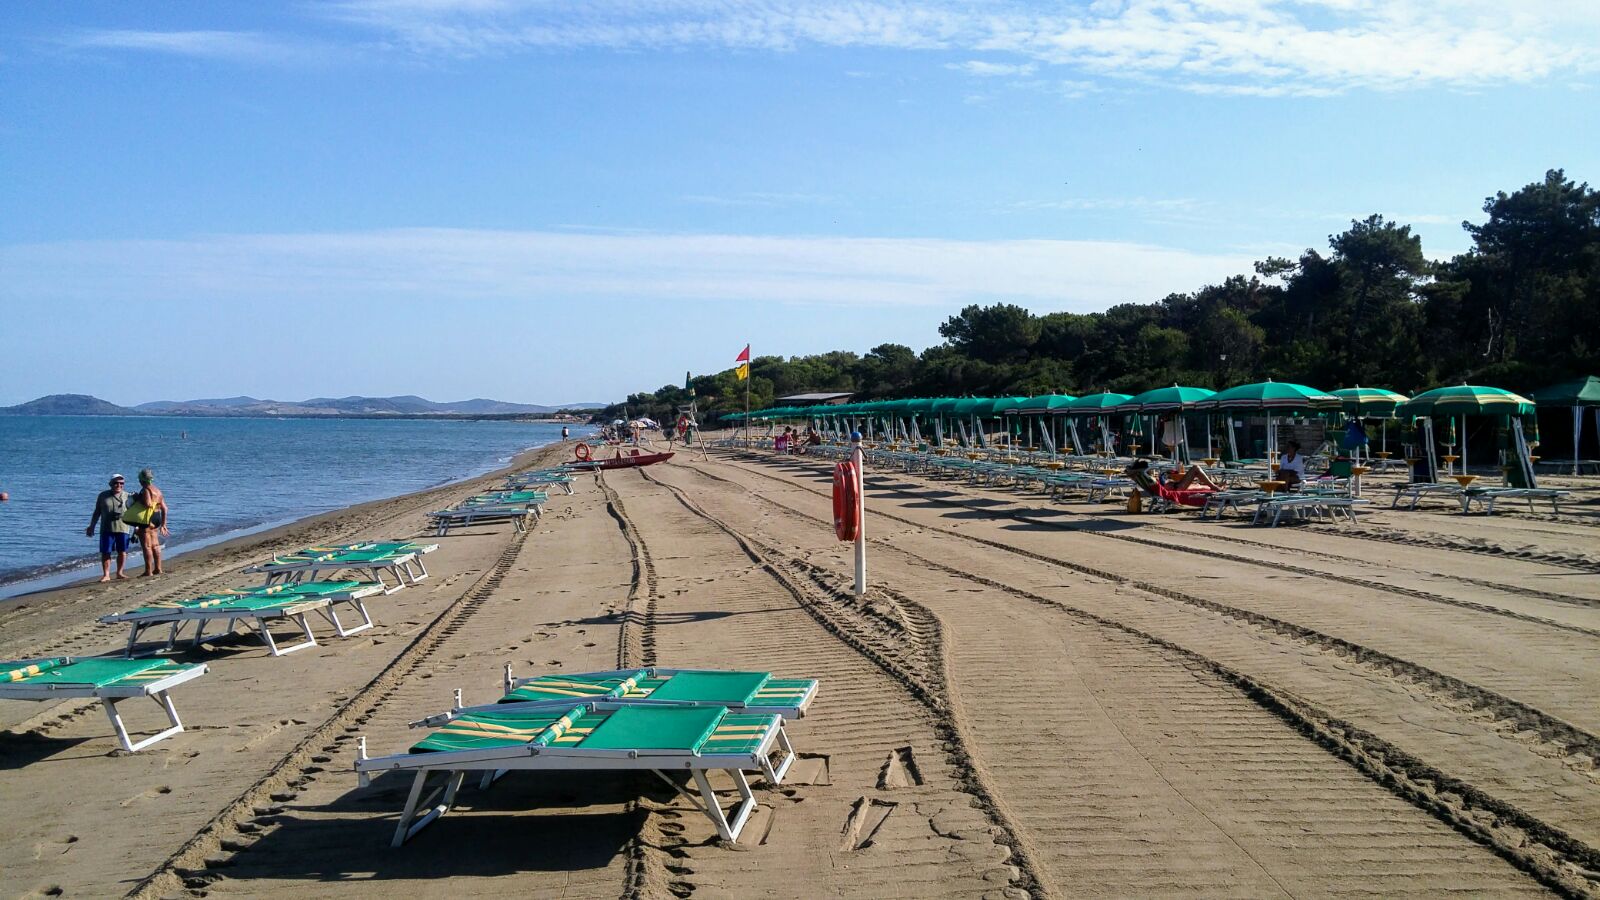 Foto de Spiaggia Florenzo con muy limpio nivel de limpieza